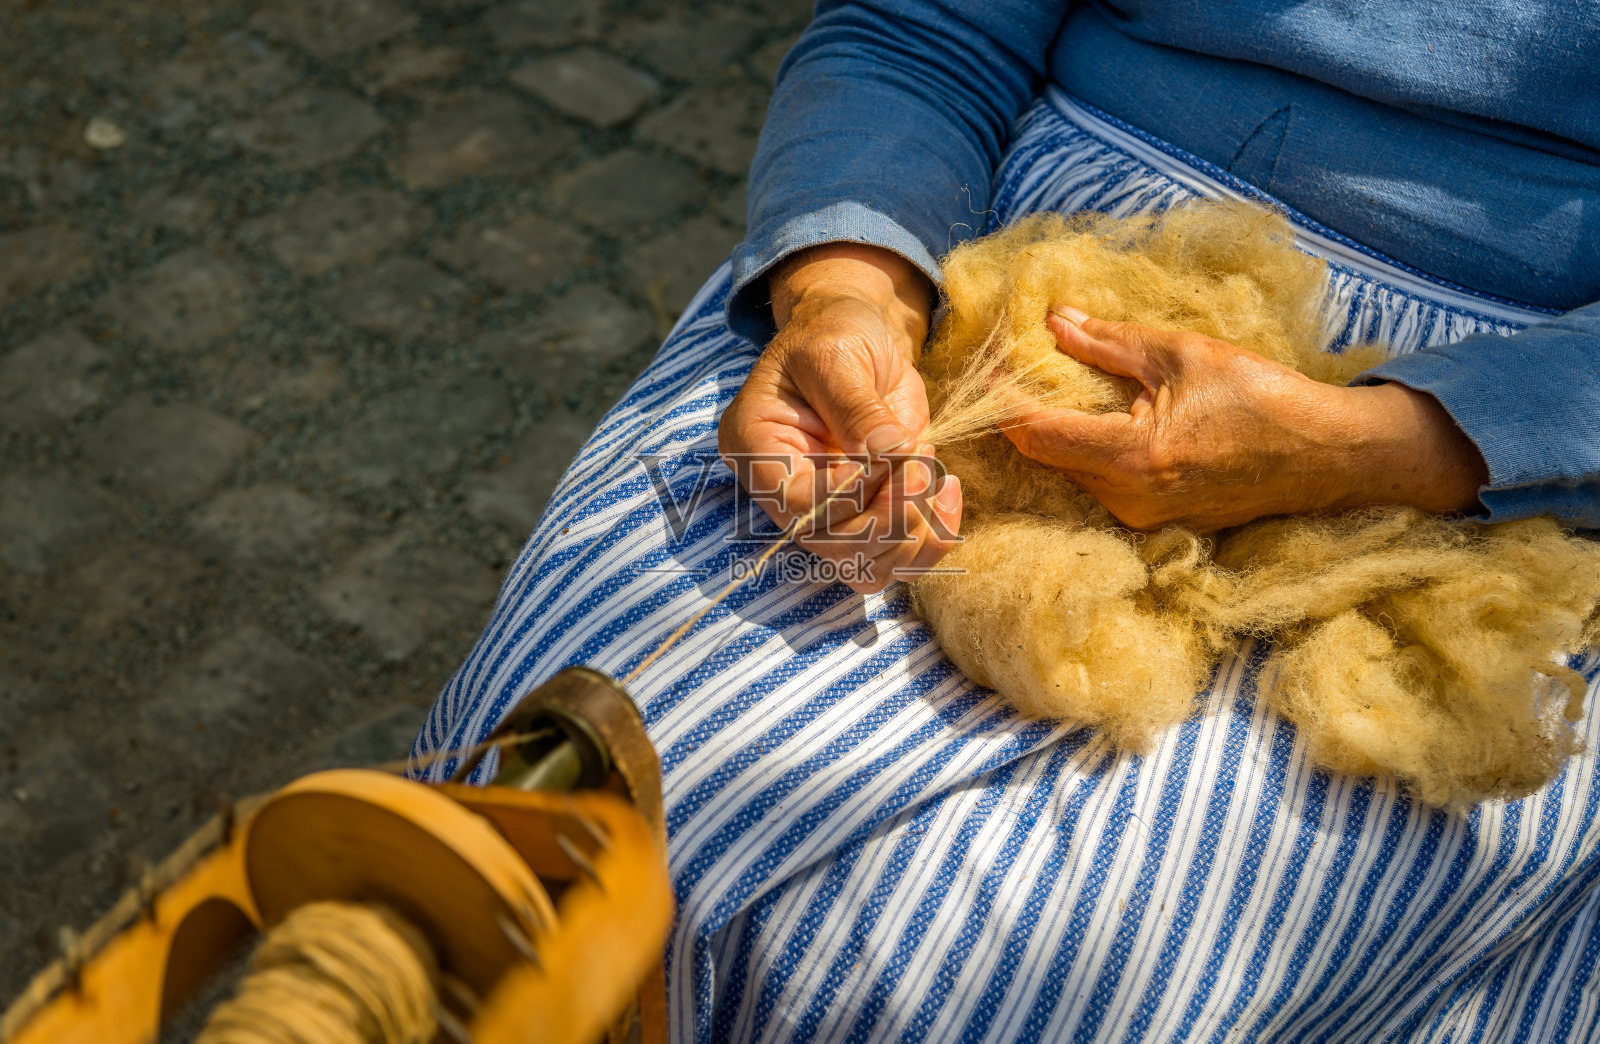 女性用手在纺车上纺生羊毛照片摄影图片